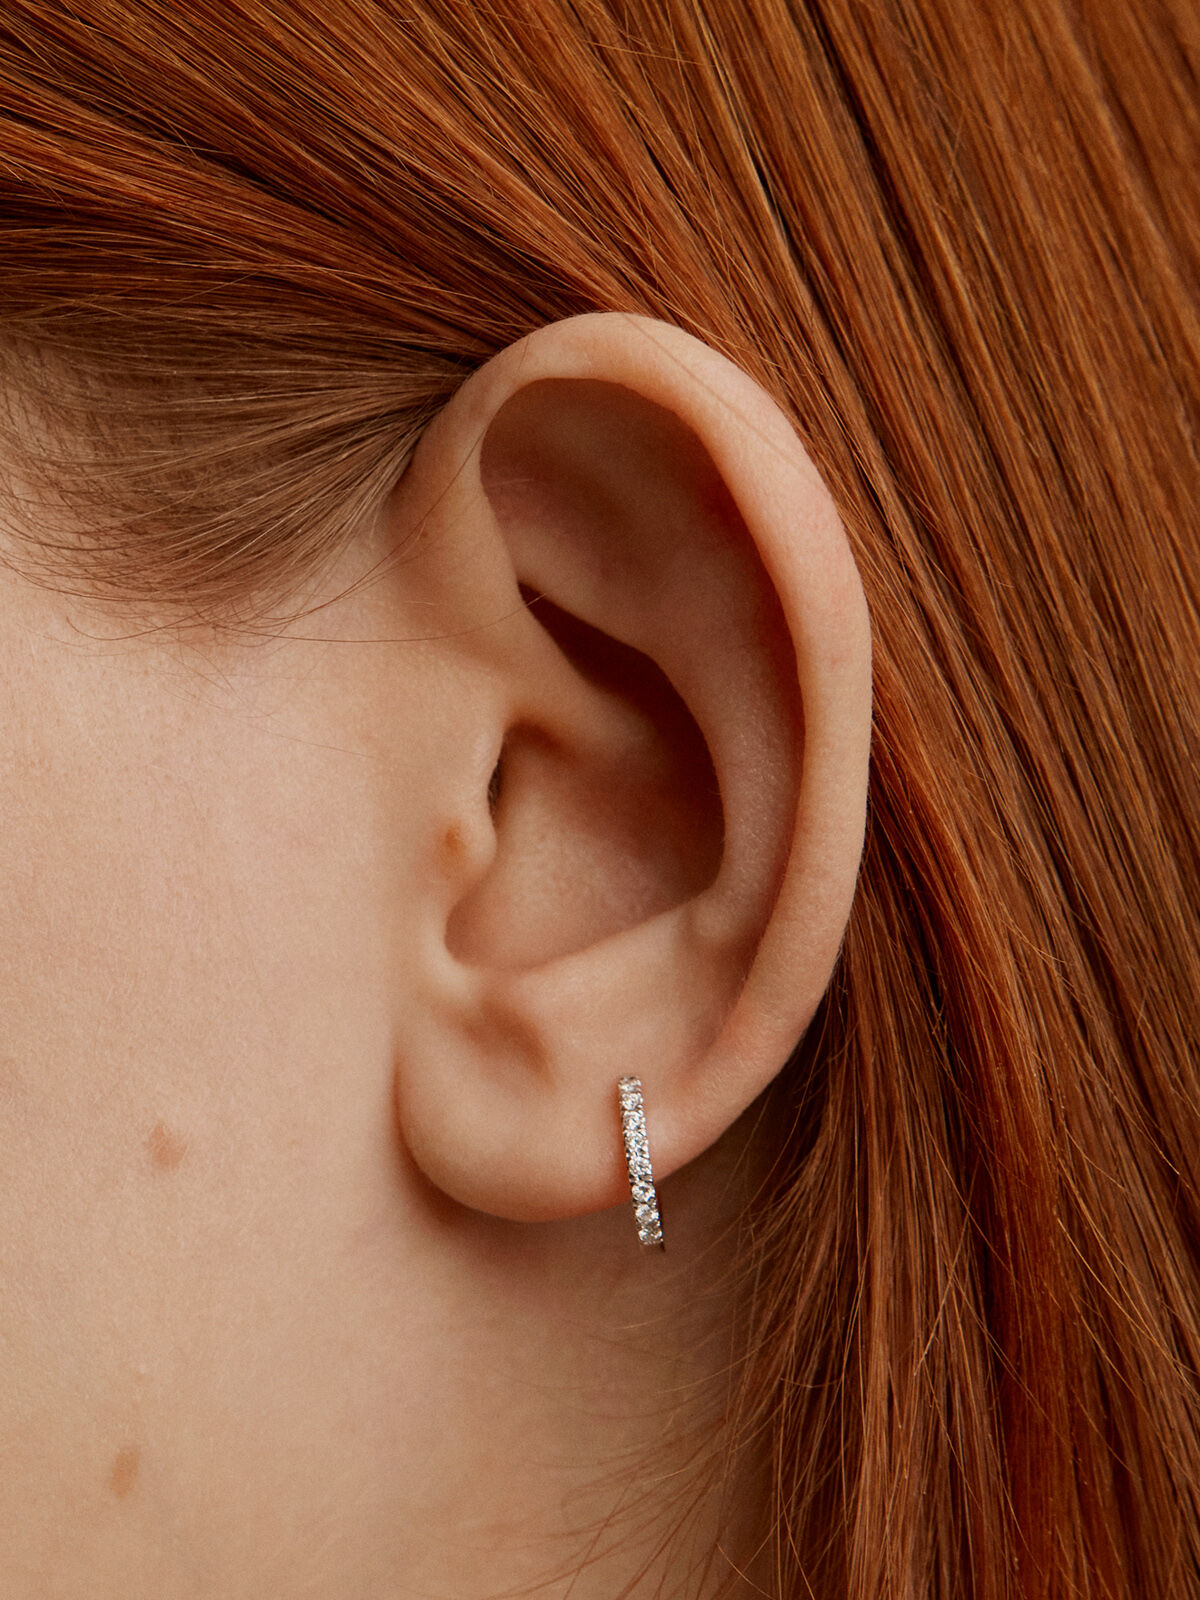 Small Skinny Silver Hoop Earring (15mm) – Written by Forest